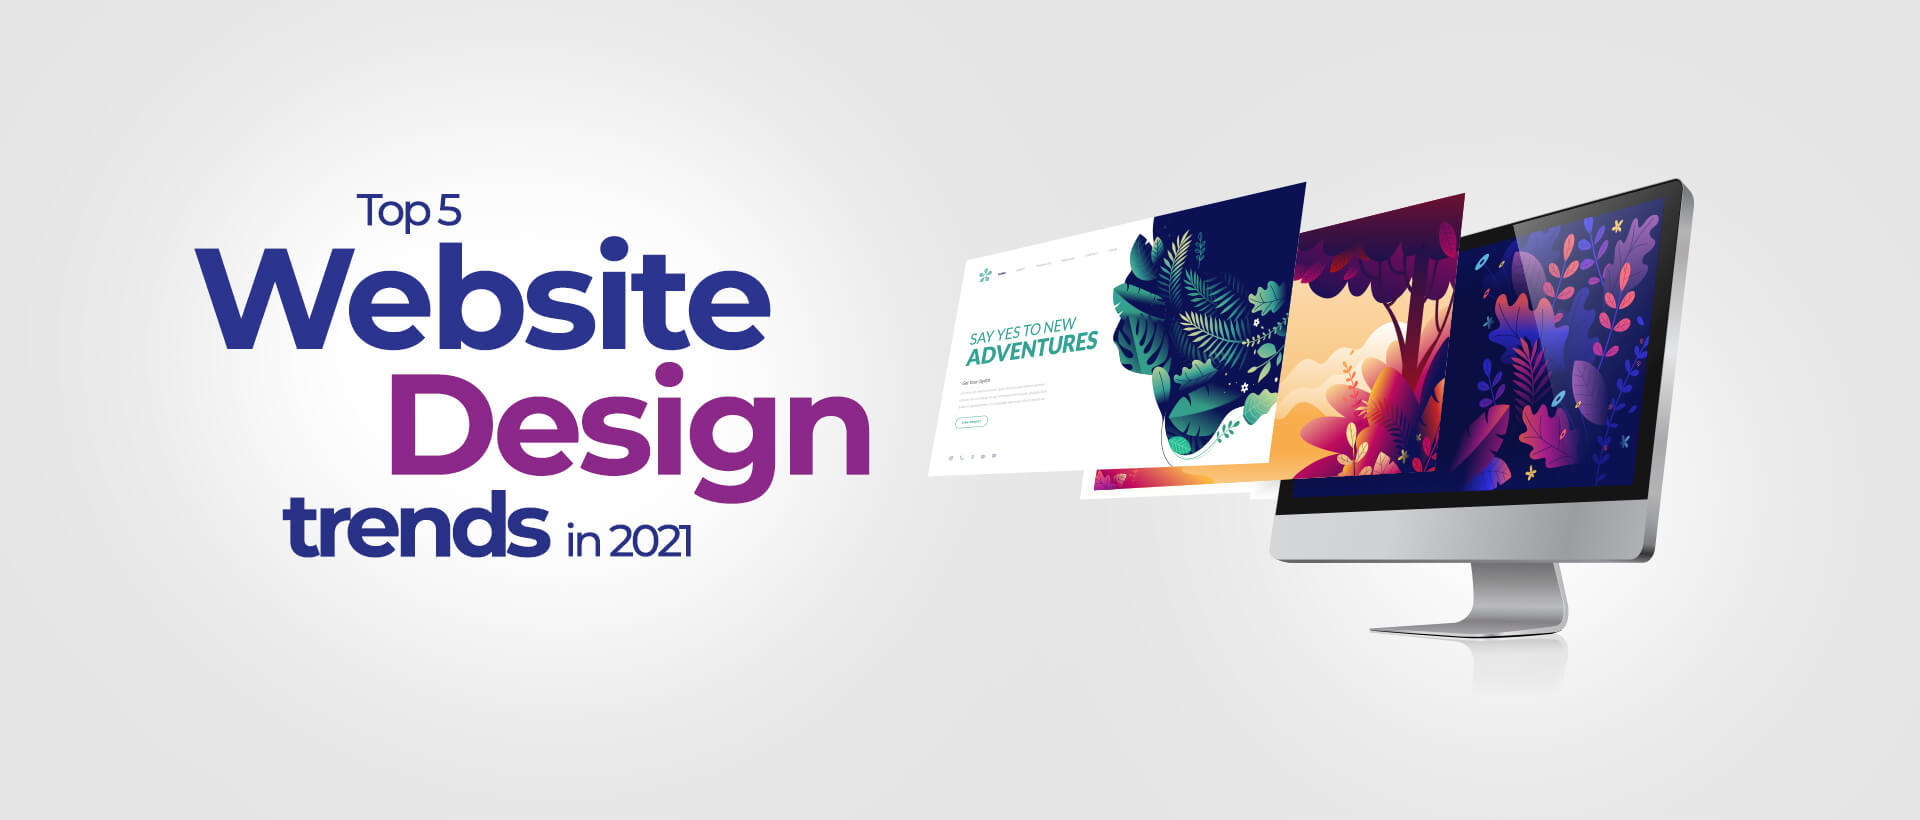 Top 5 Website Design trends in 2021